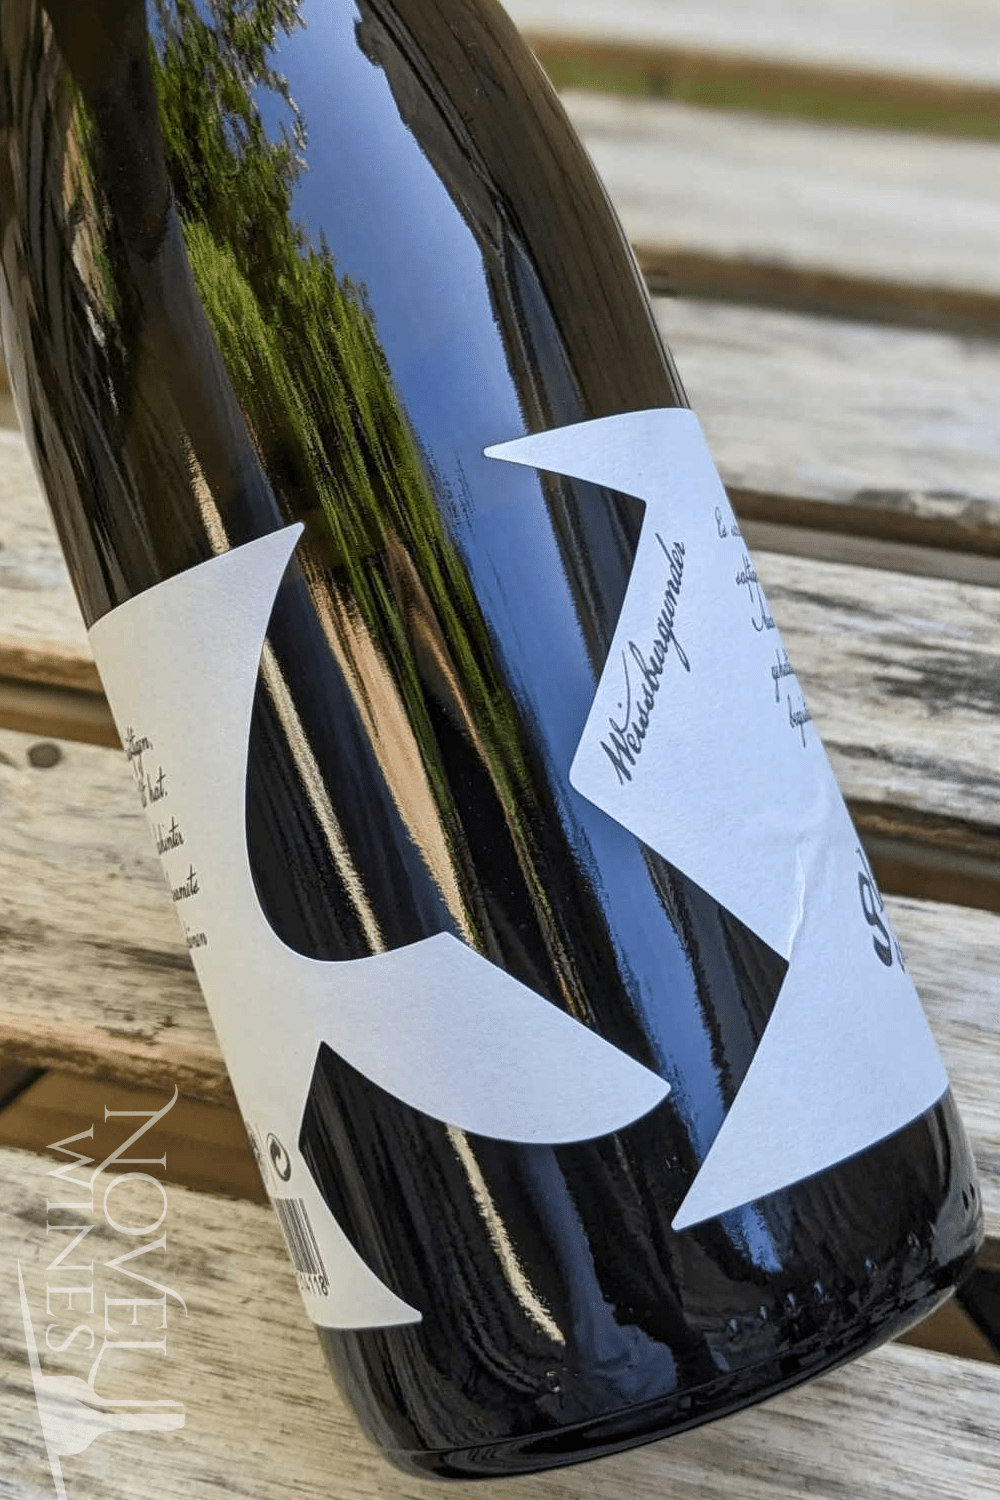 Glatzer White Wine Walter Glatzer Weissburgunder Carnuntum DAC 2021, Austria